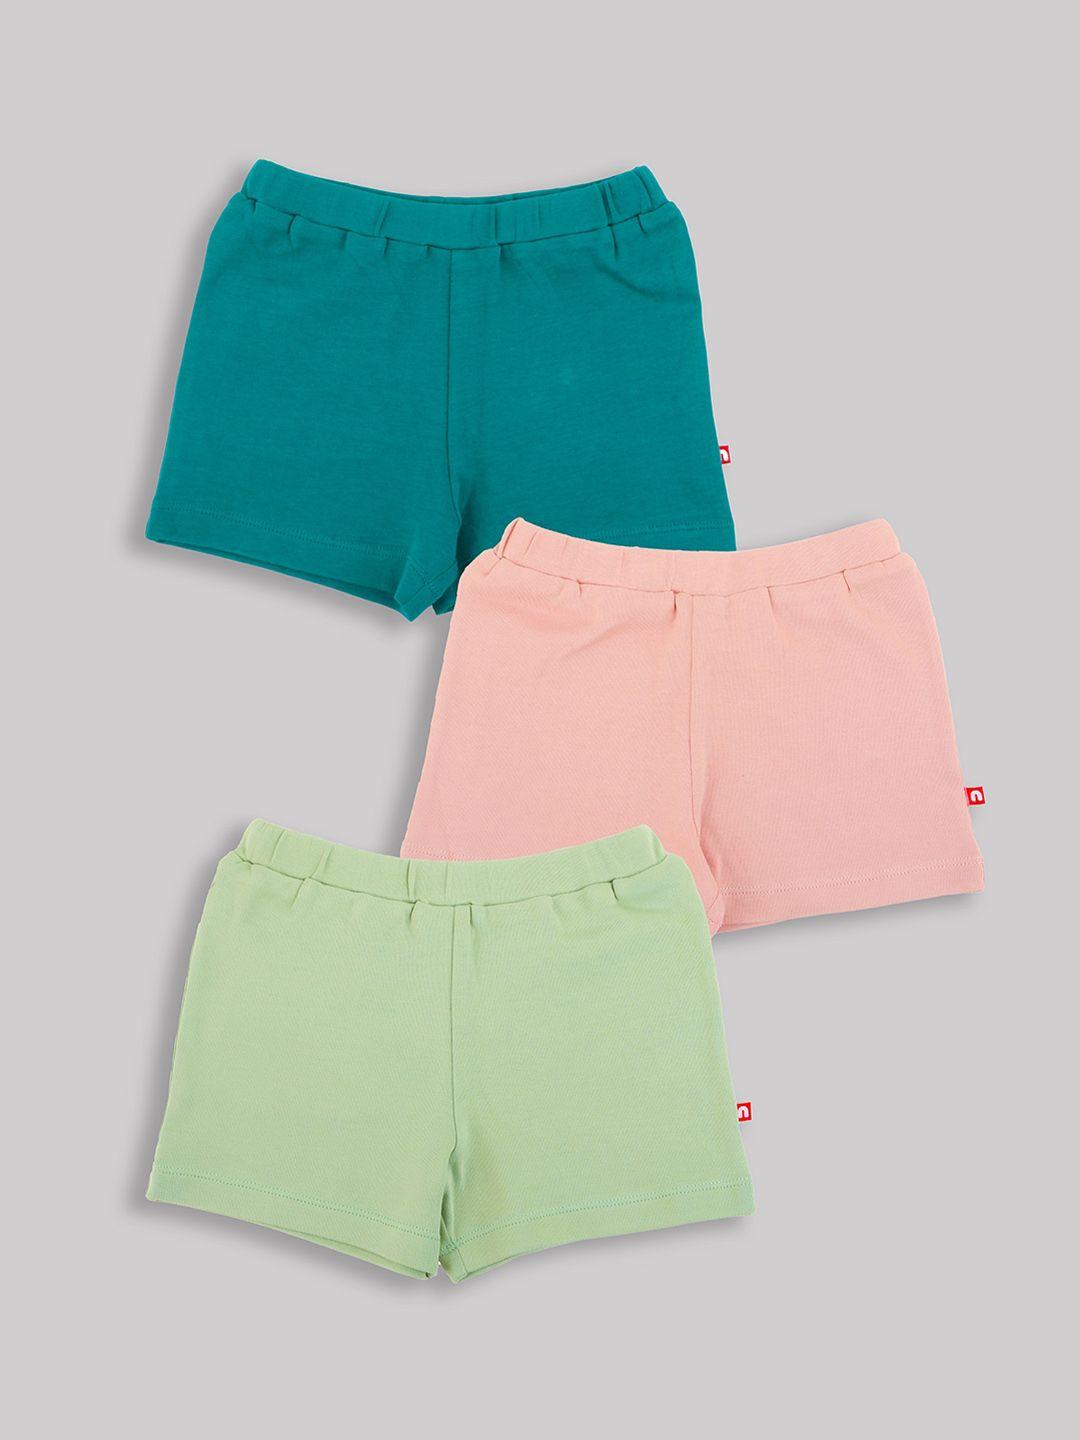 nino bambino boys hot pant shorts - pack of 3